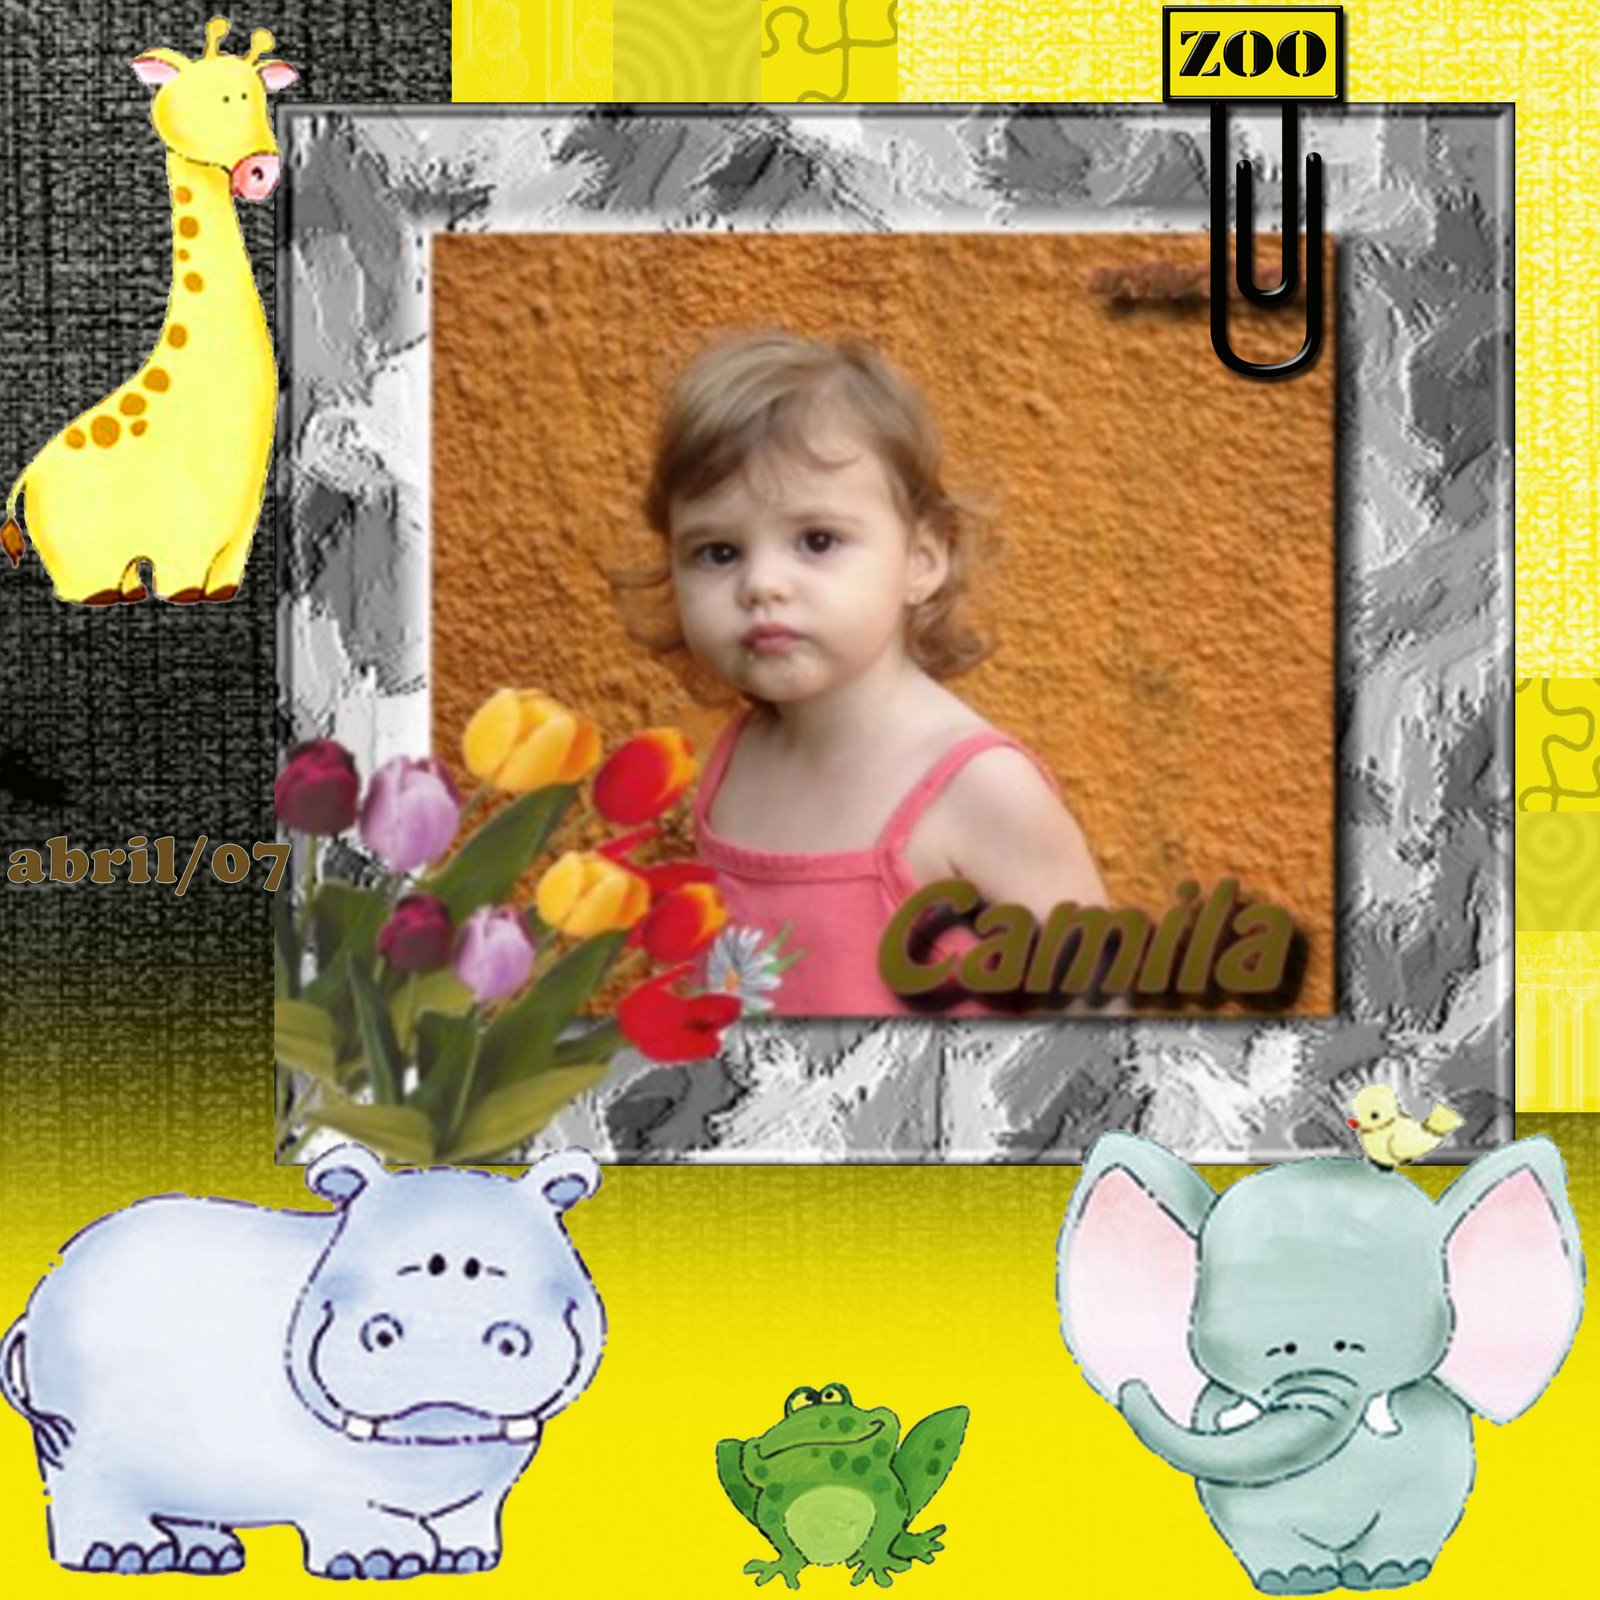 [Camila+Zoo+21-04-07.jpg]